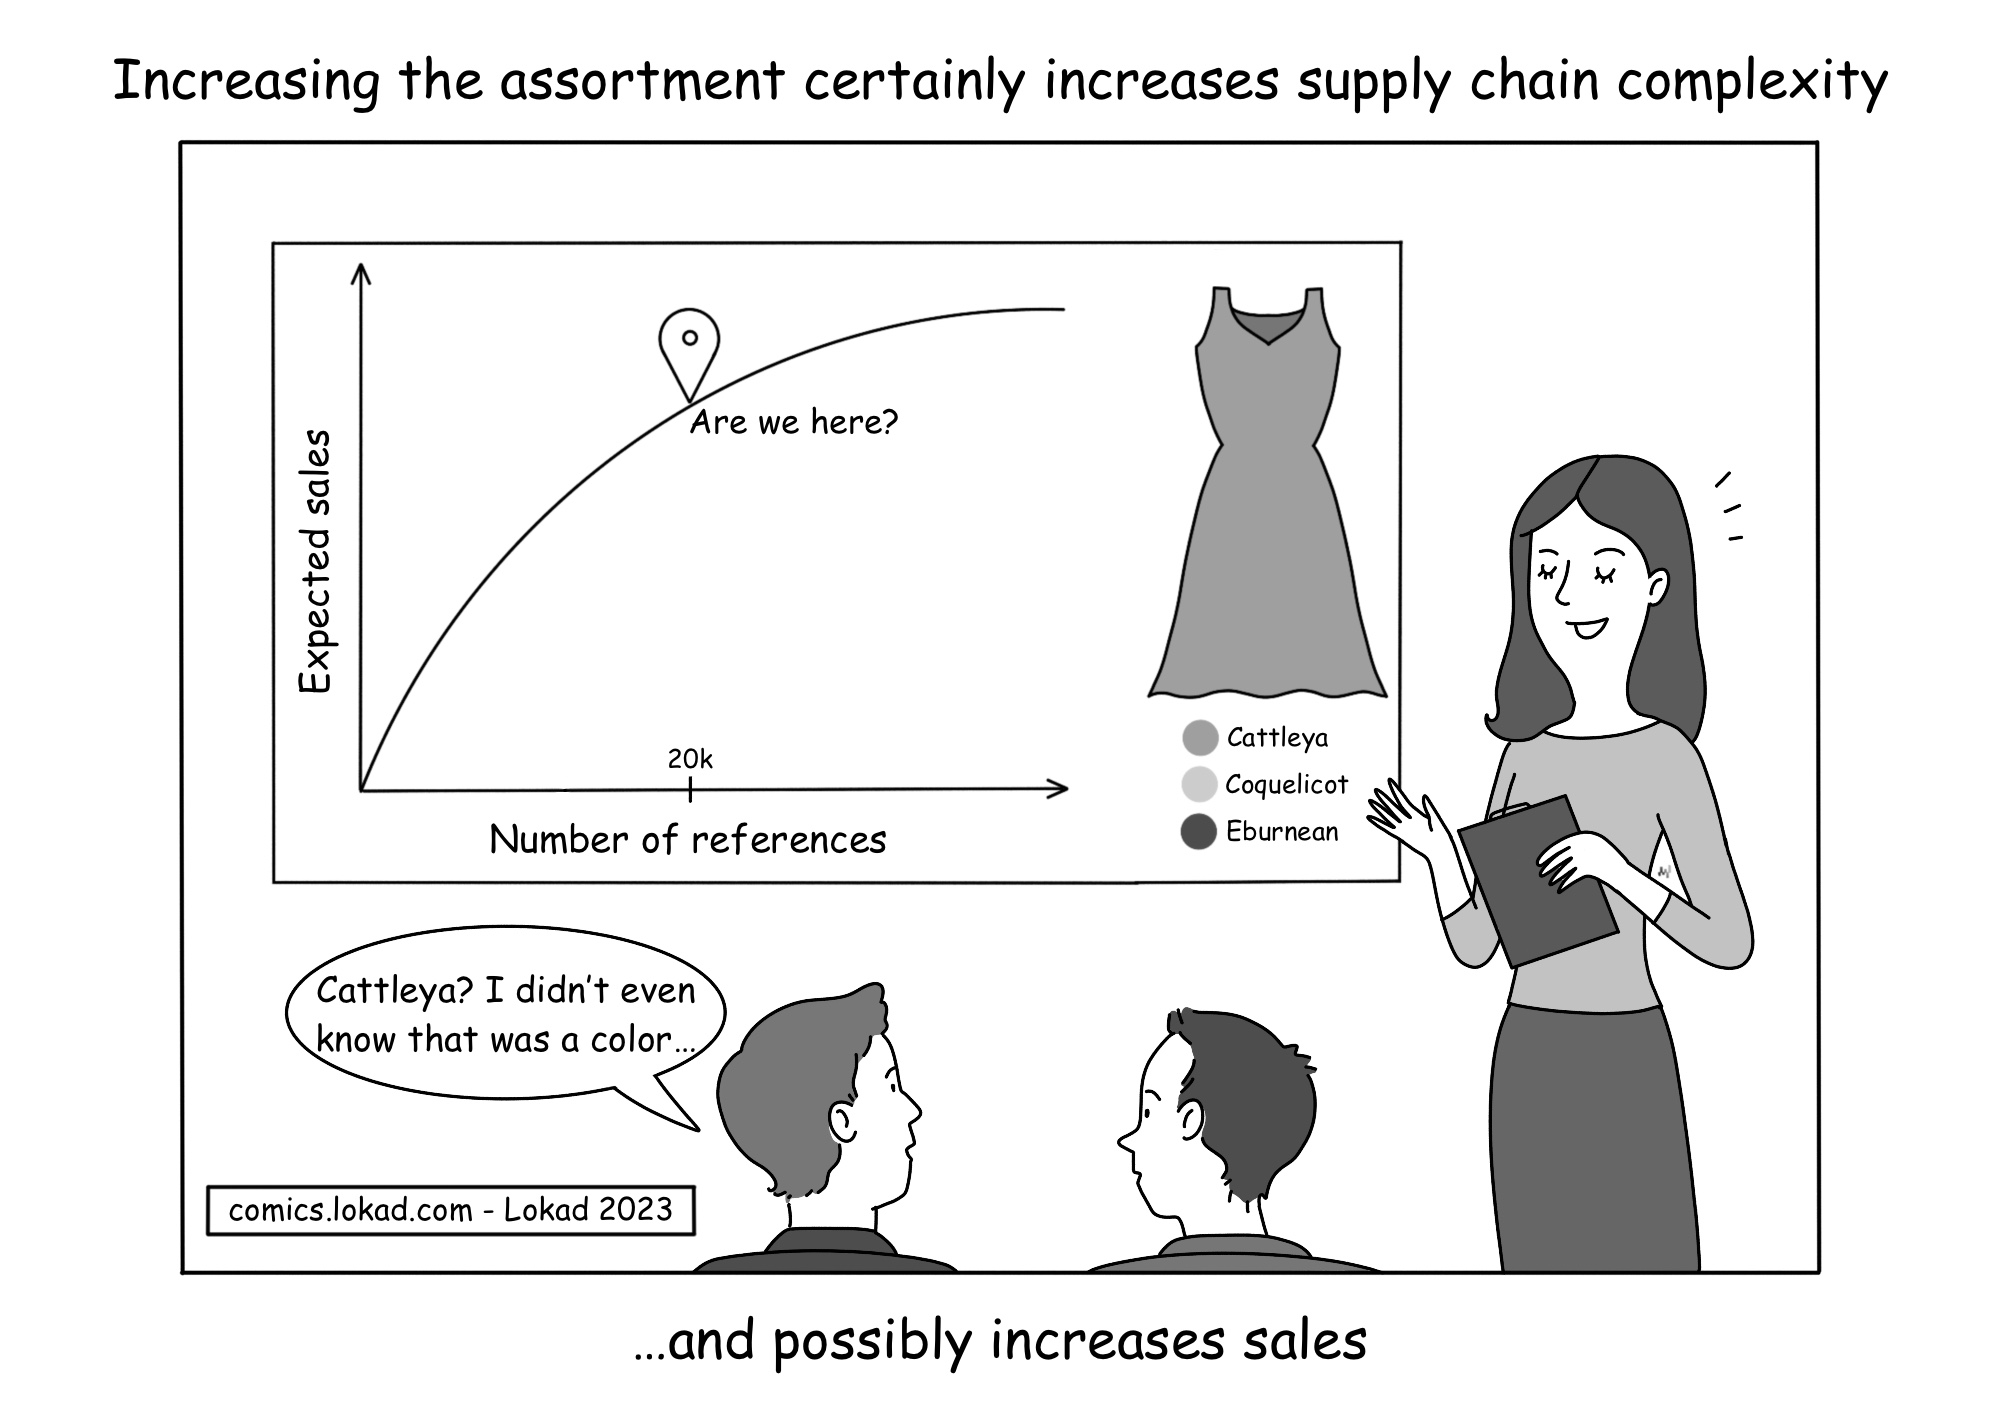 Augmenter l'assortiment augmente certainement la complexité de la supply chain